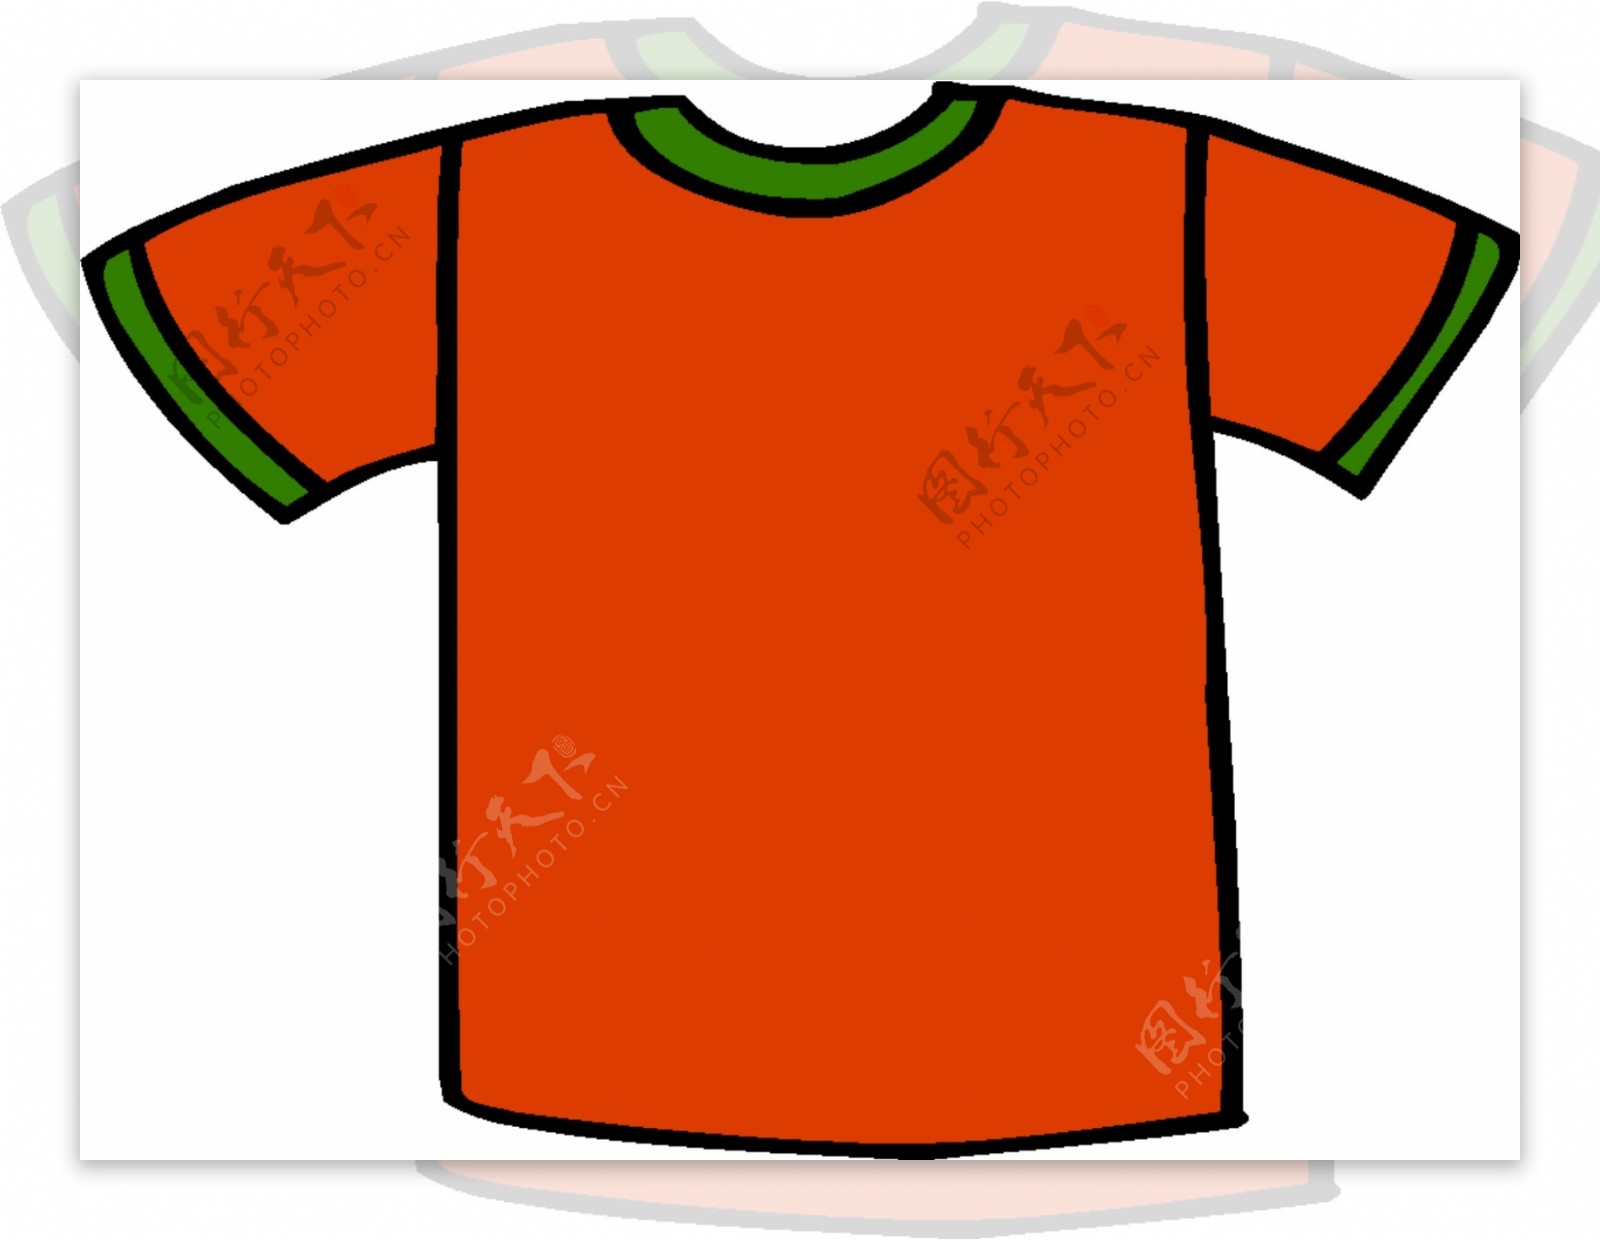 橘色T恤衫矢量图